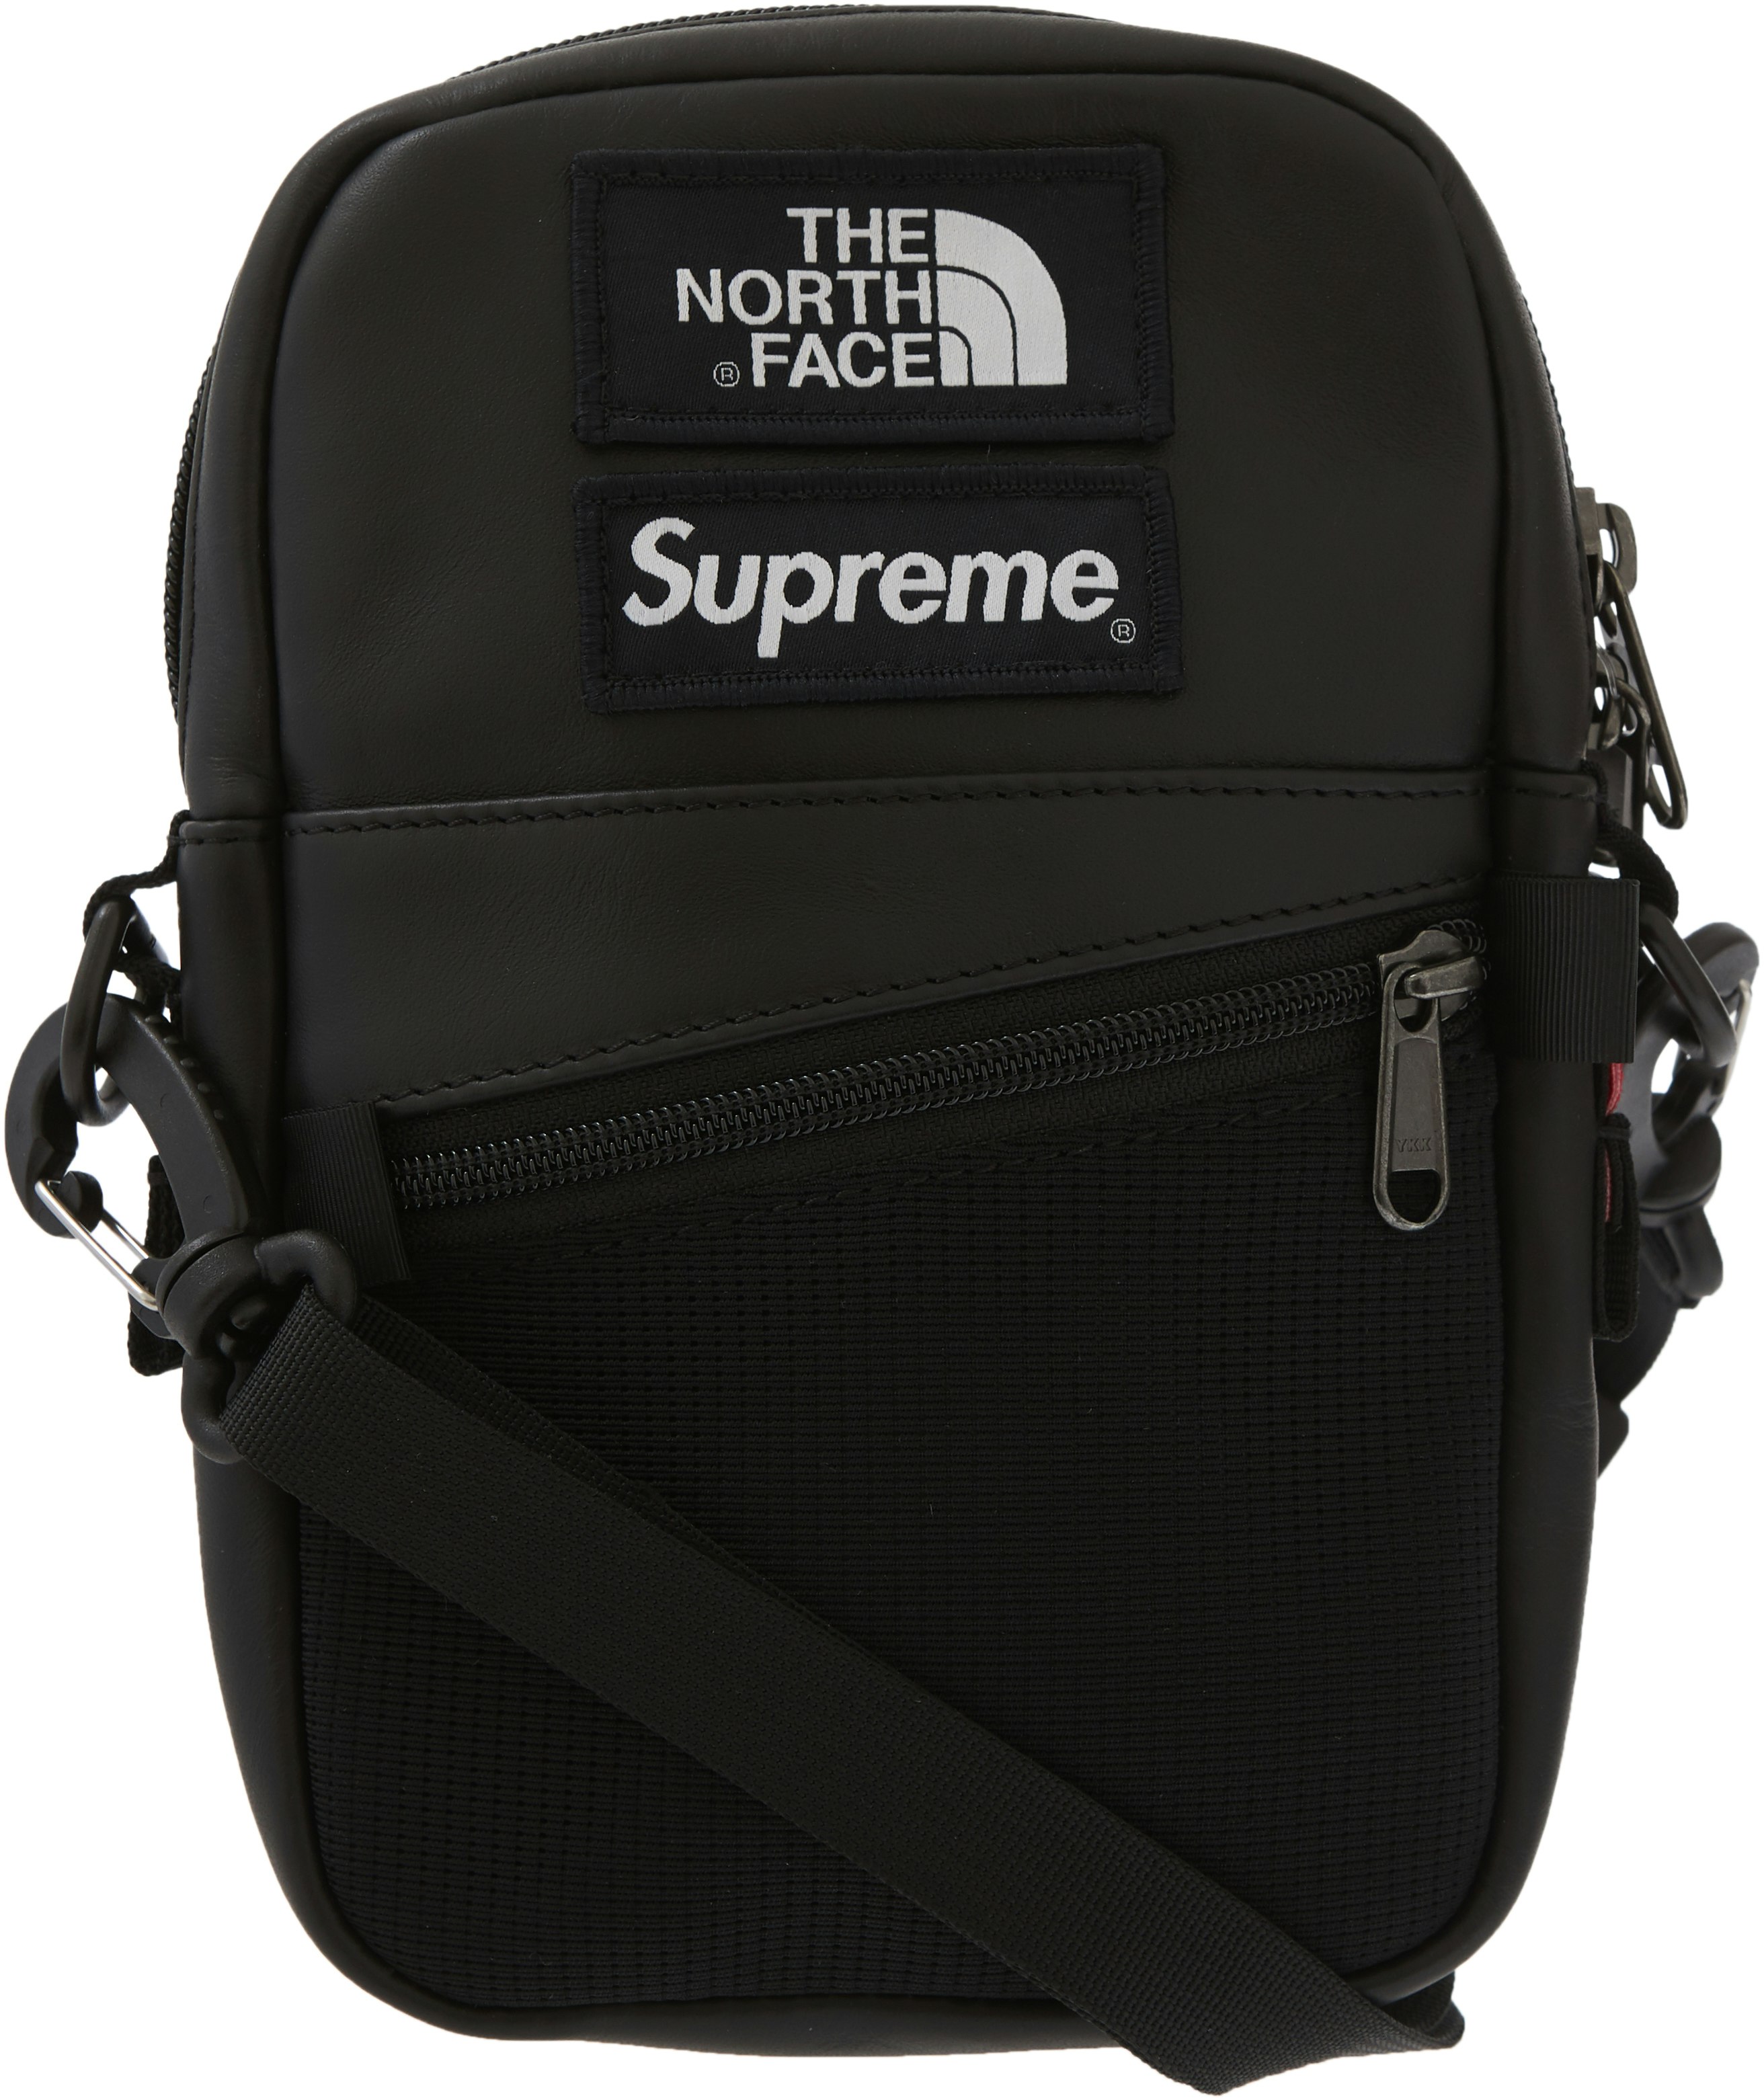 SUPREME×THE NORTH FACE shoulder bag